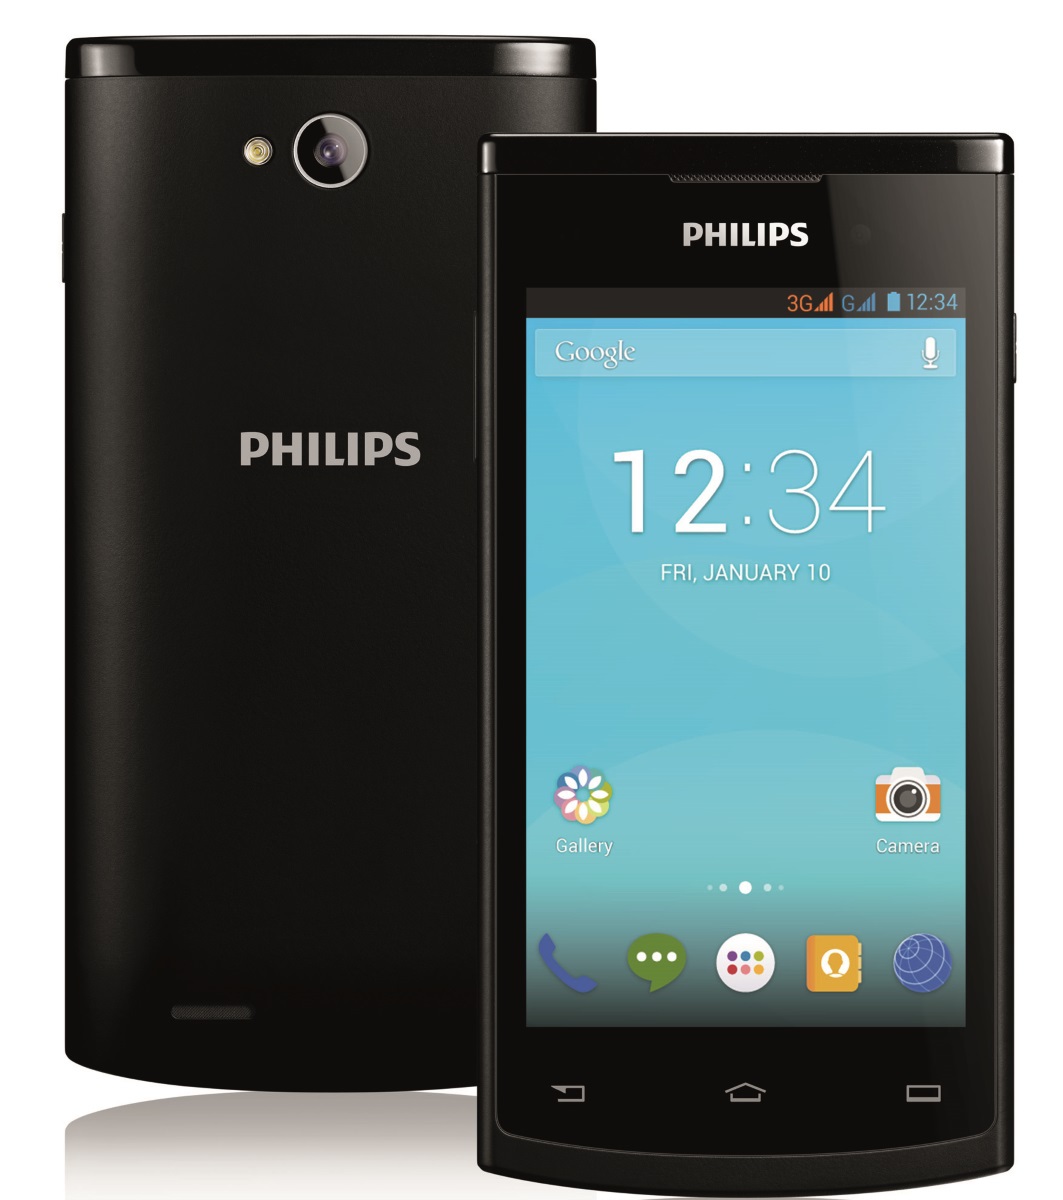 Номер телефона филипс. Смартфон Philips s308. Филипс s306. Смартфон Philips w626. Philips 399.